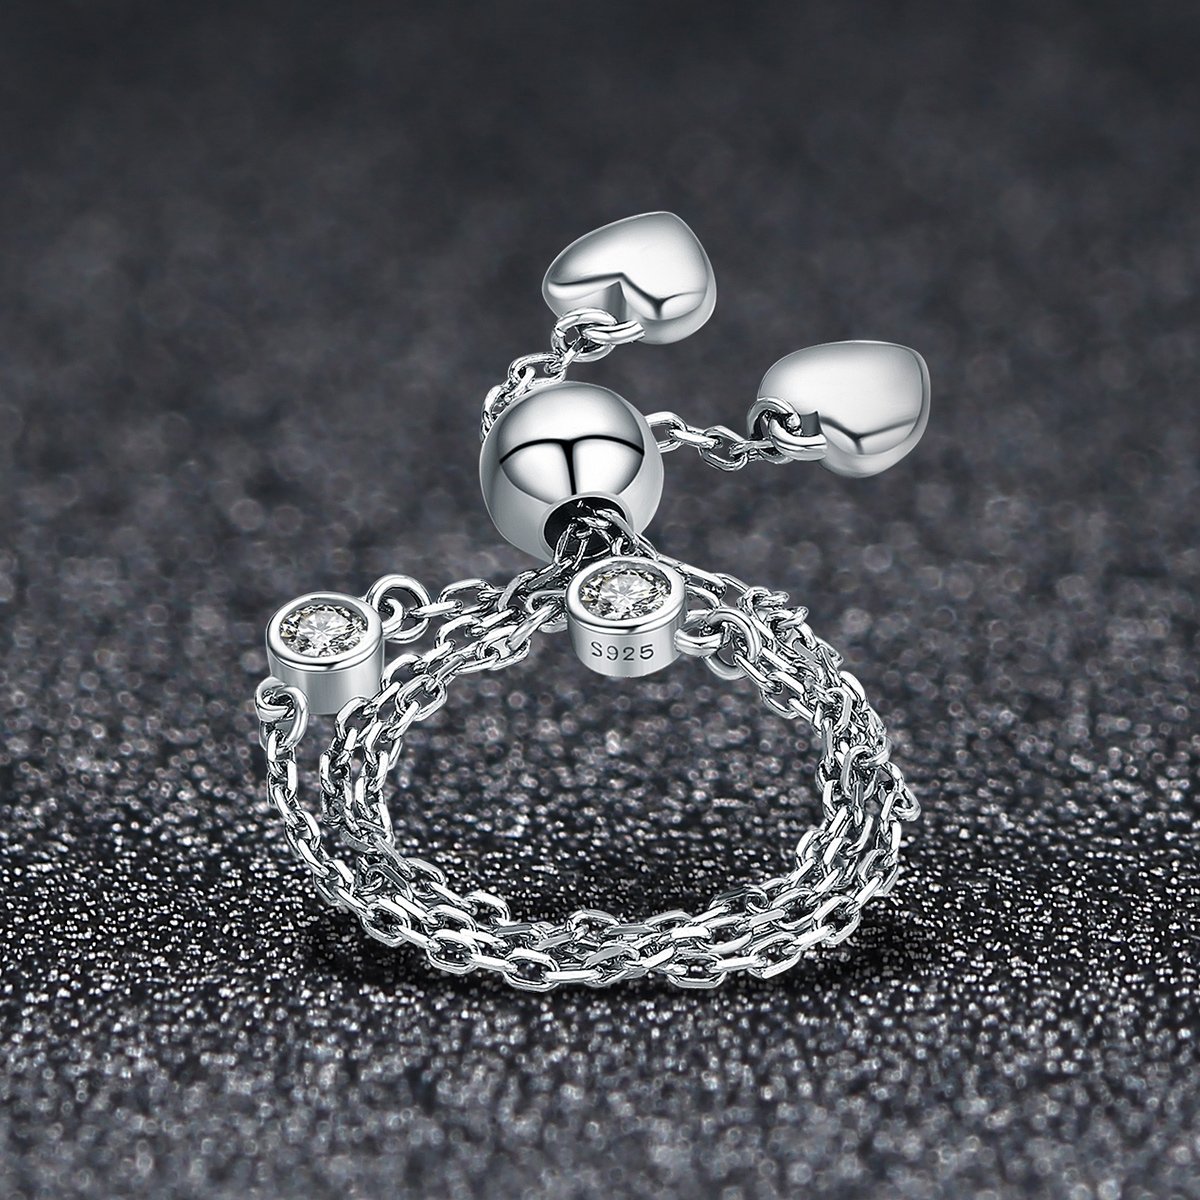 Heart Adjustable Chain Elegant 925 Sterling Silver Bracelet - Aisllin Jewelry